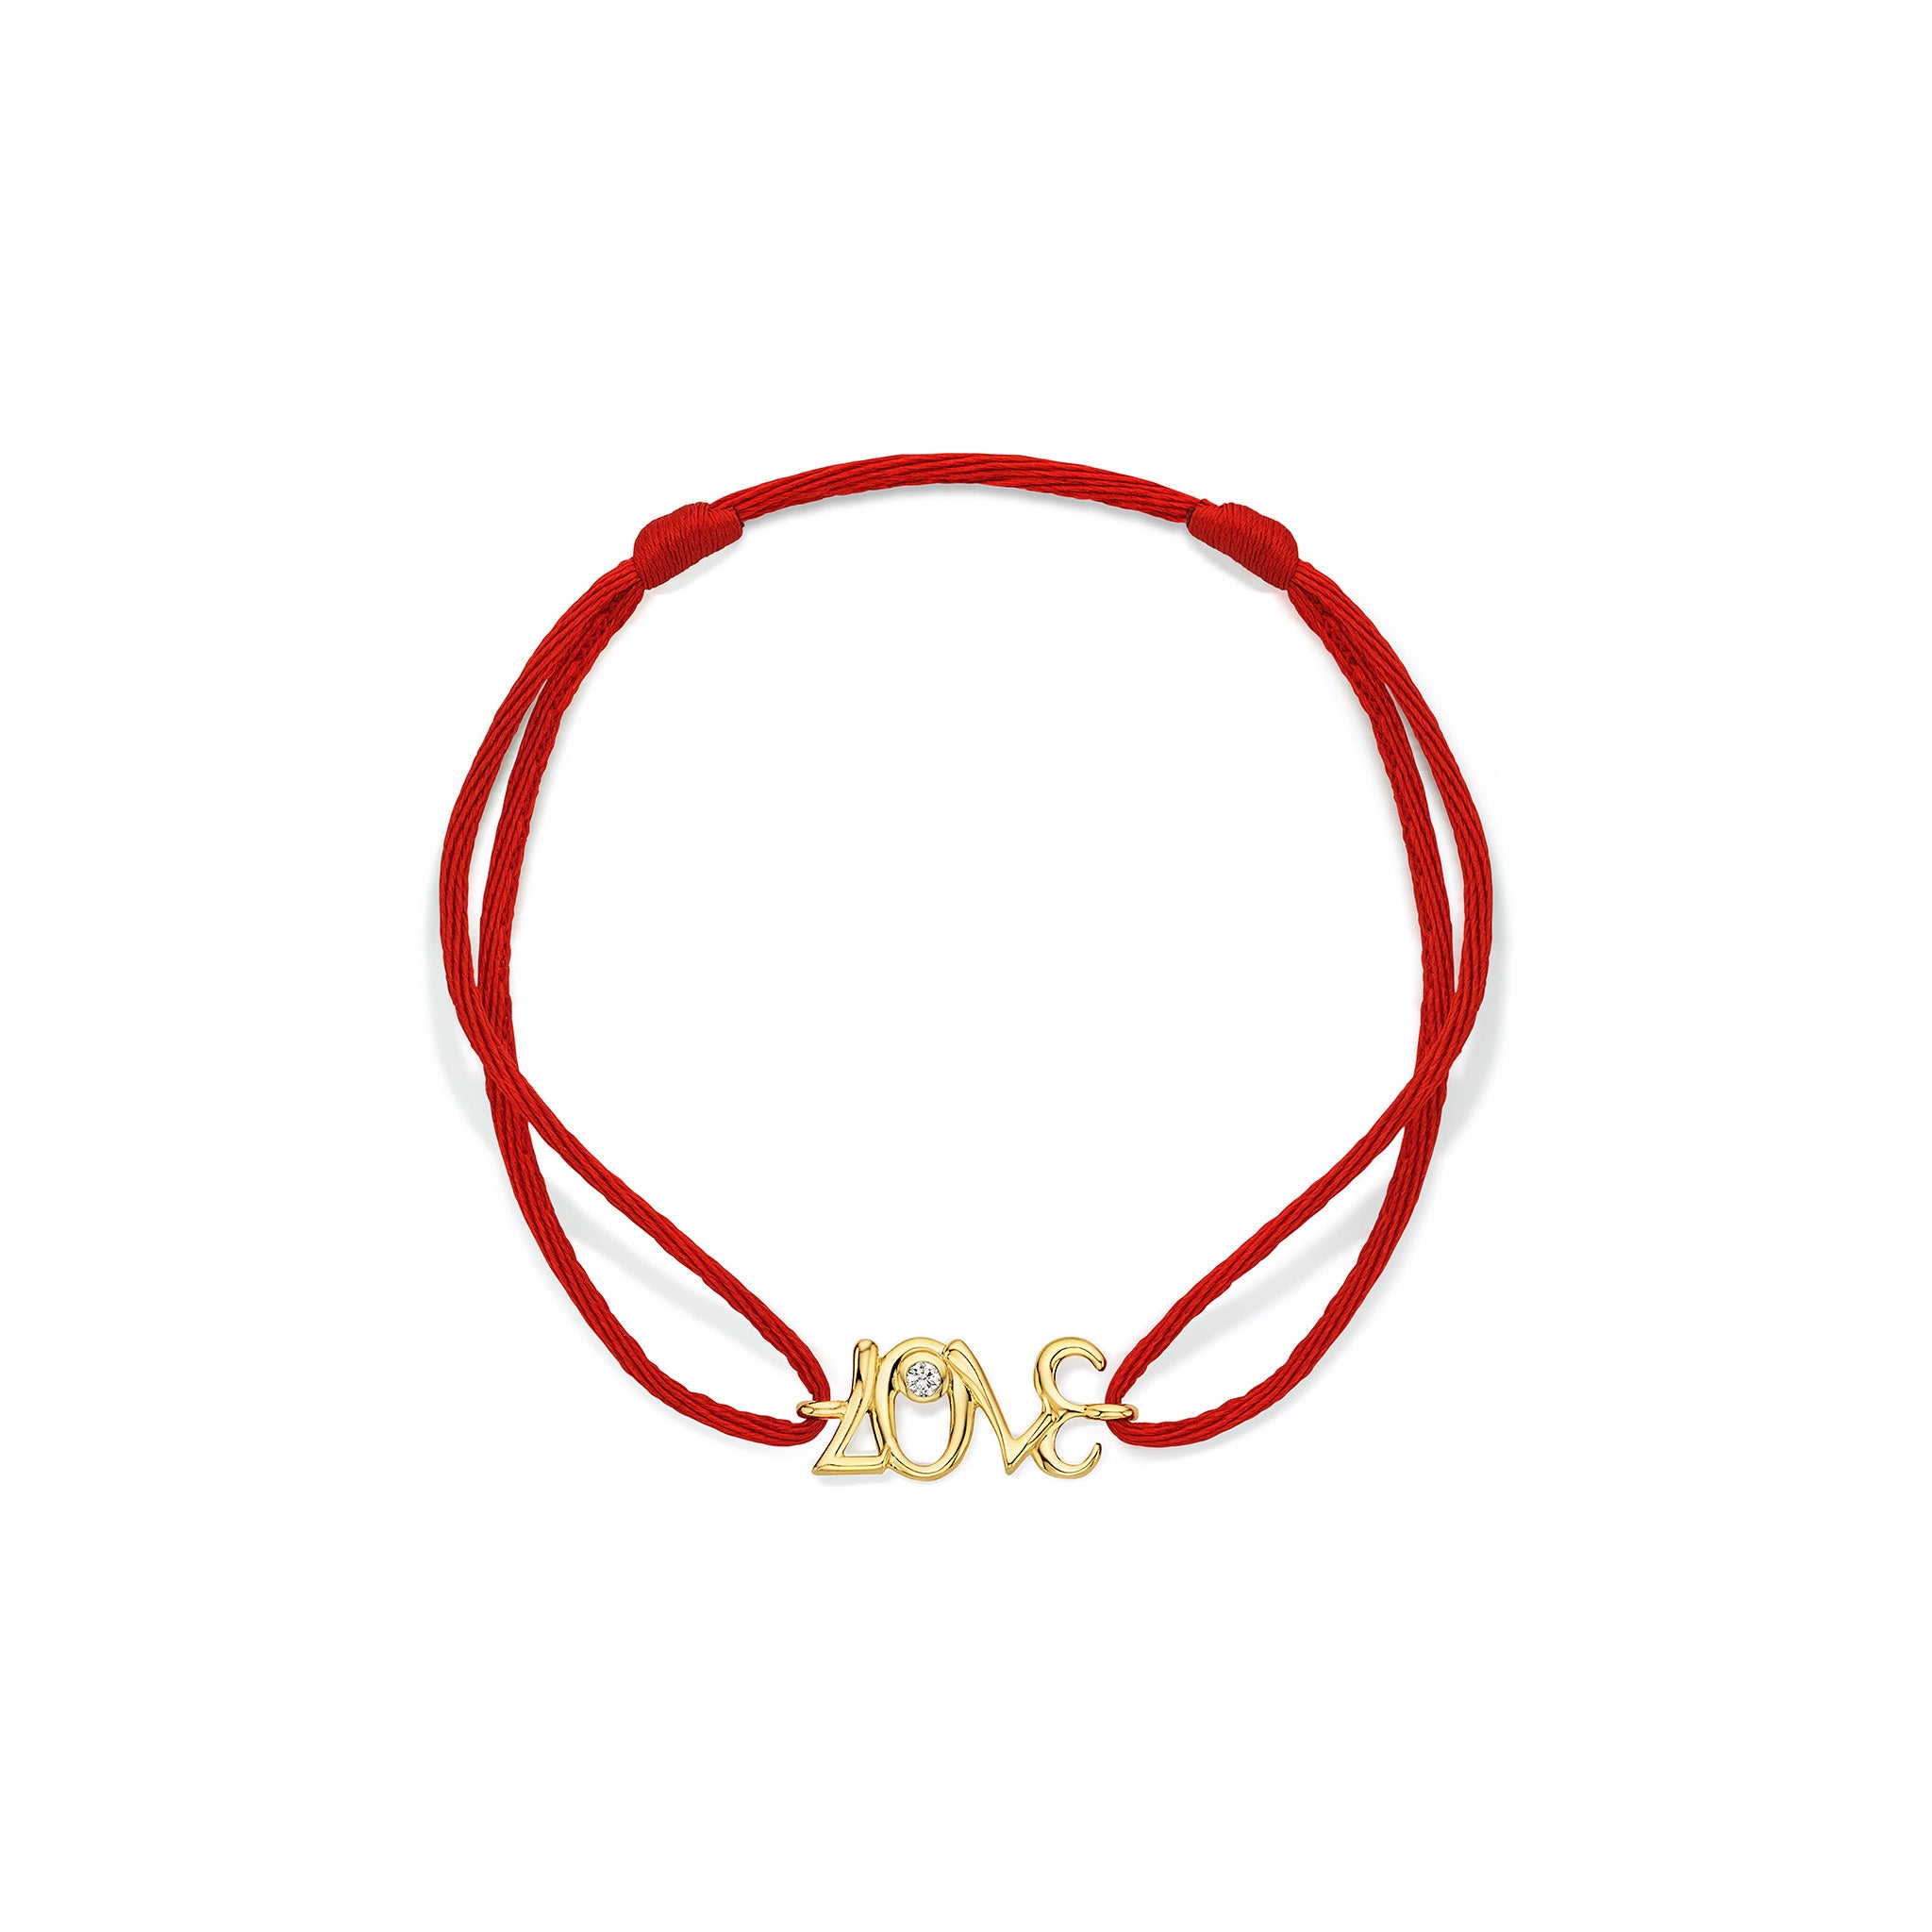 Eros LOVE Red Cord Bracelet with Diamonds in 18K